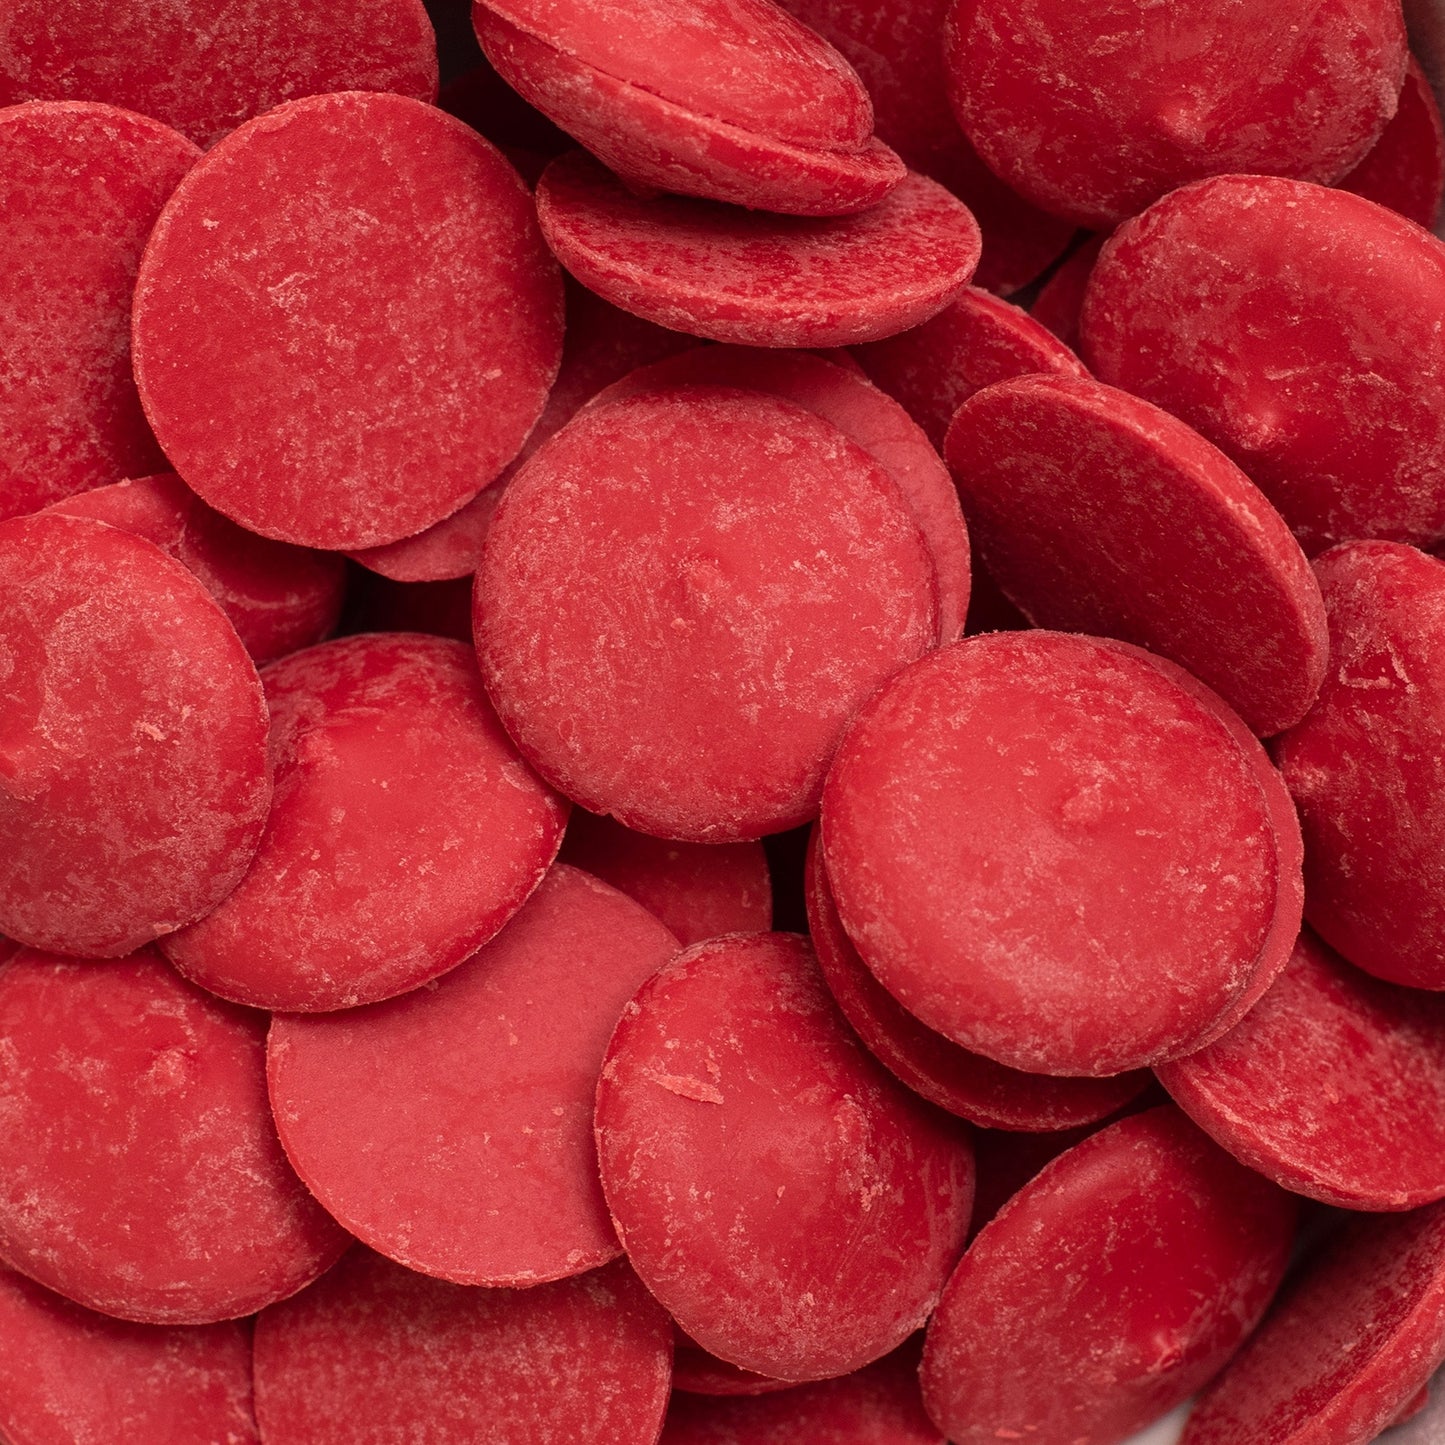 Sweetshop Melt'ems 12oz-Red